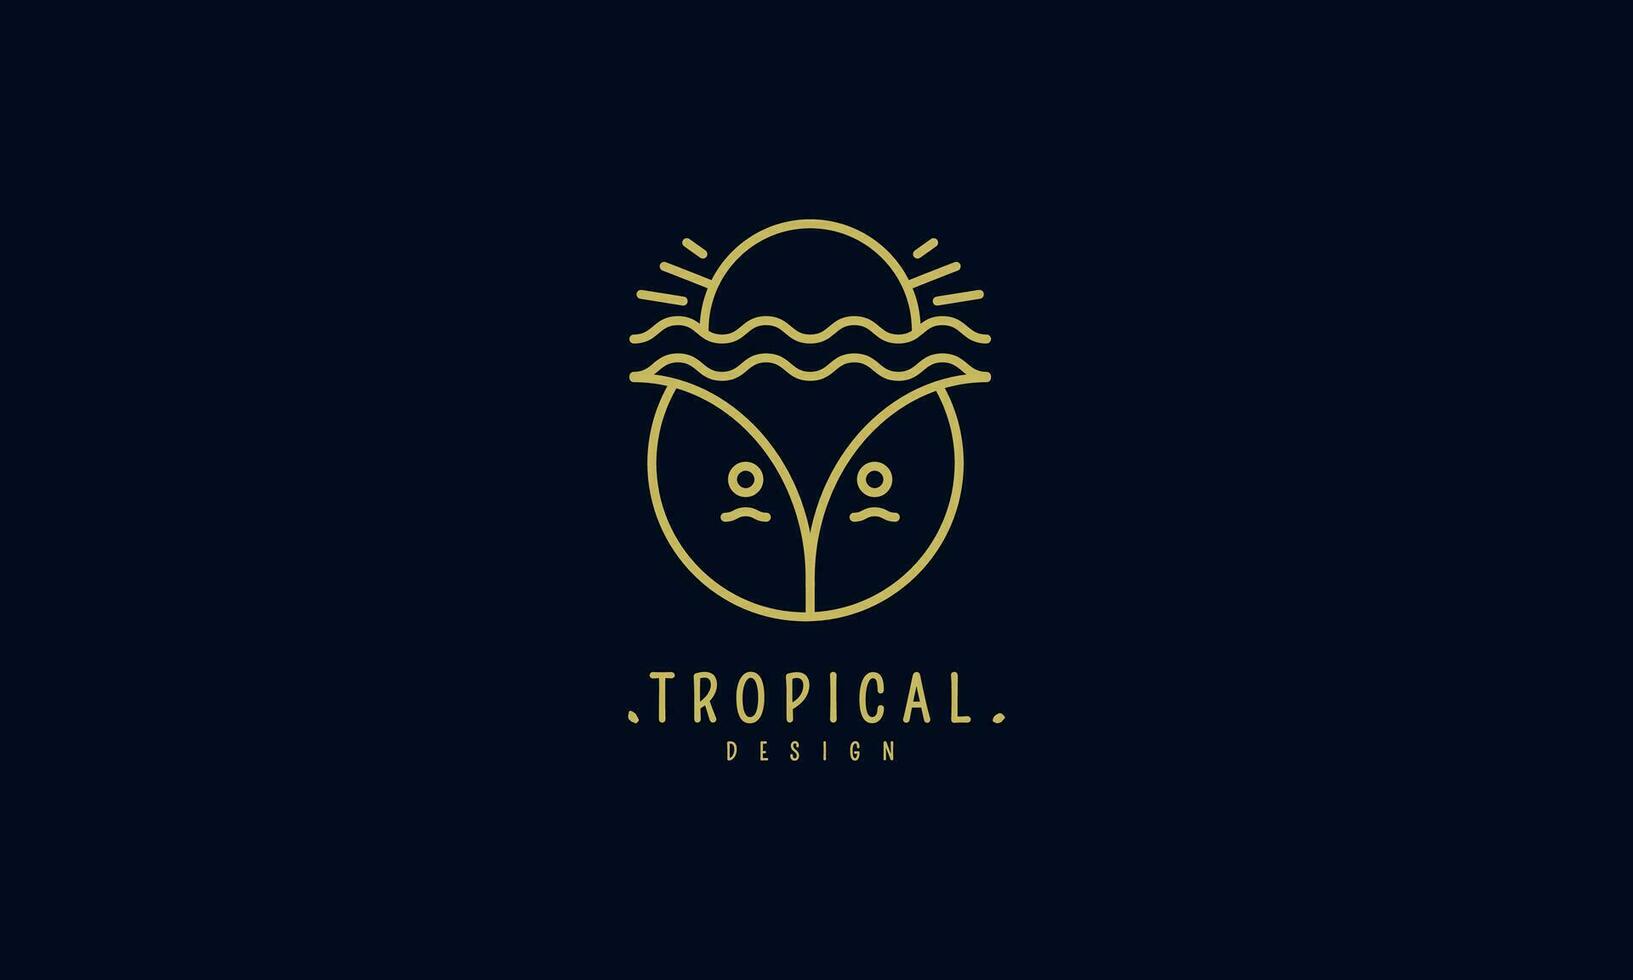 vector logo de tropical Coco, olas y puesta de sol. diseño logo de negocio, día festivo, viaje agencia, ecología y recurso concepto, turismo, spa y natural productos cosméticos.